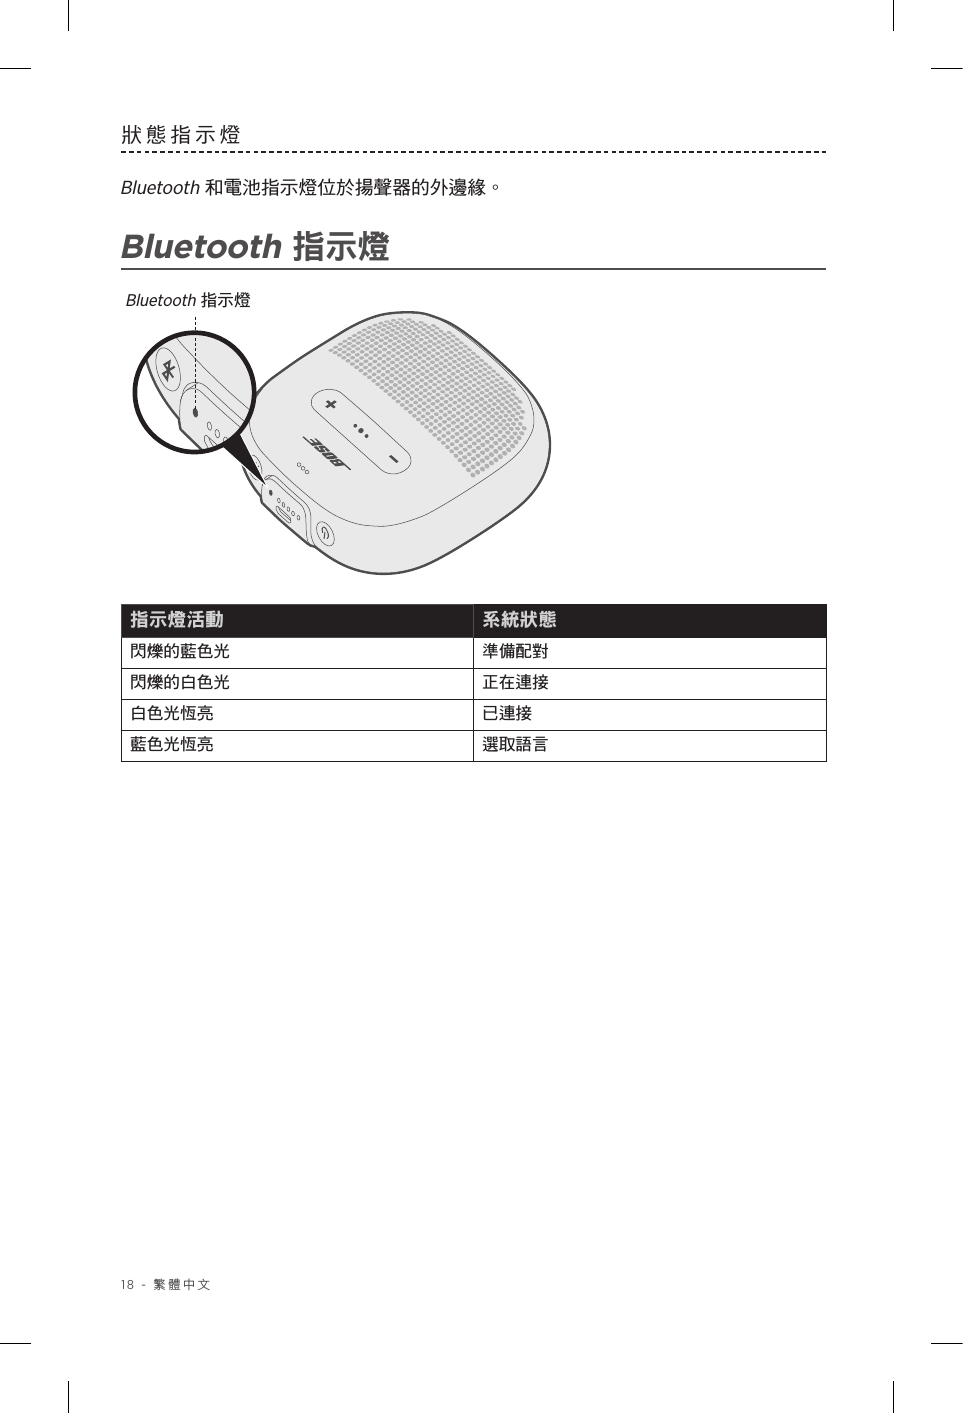 18 - 繁體中文狀態指示燈Bluetooth 和電池指示燈位於揚聲器的外邊緣。Bluetooth 指示燈Bluetooth 指示燈指示燈活動 系統狀態閃爍的藍色光 準備配對閃爍的白色光 正在連接白色光恆亮 已連接藍色光恆亮 選取語言